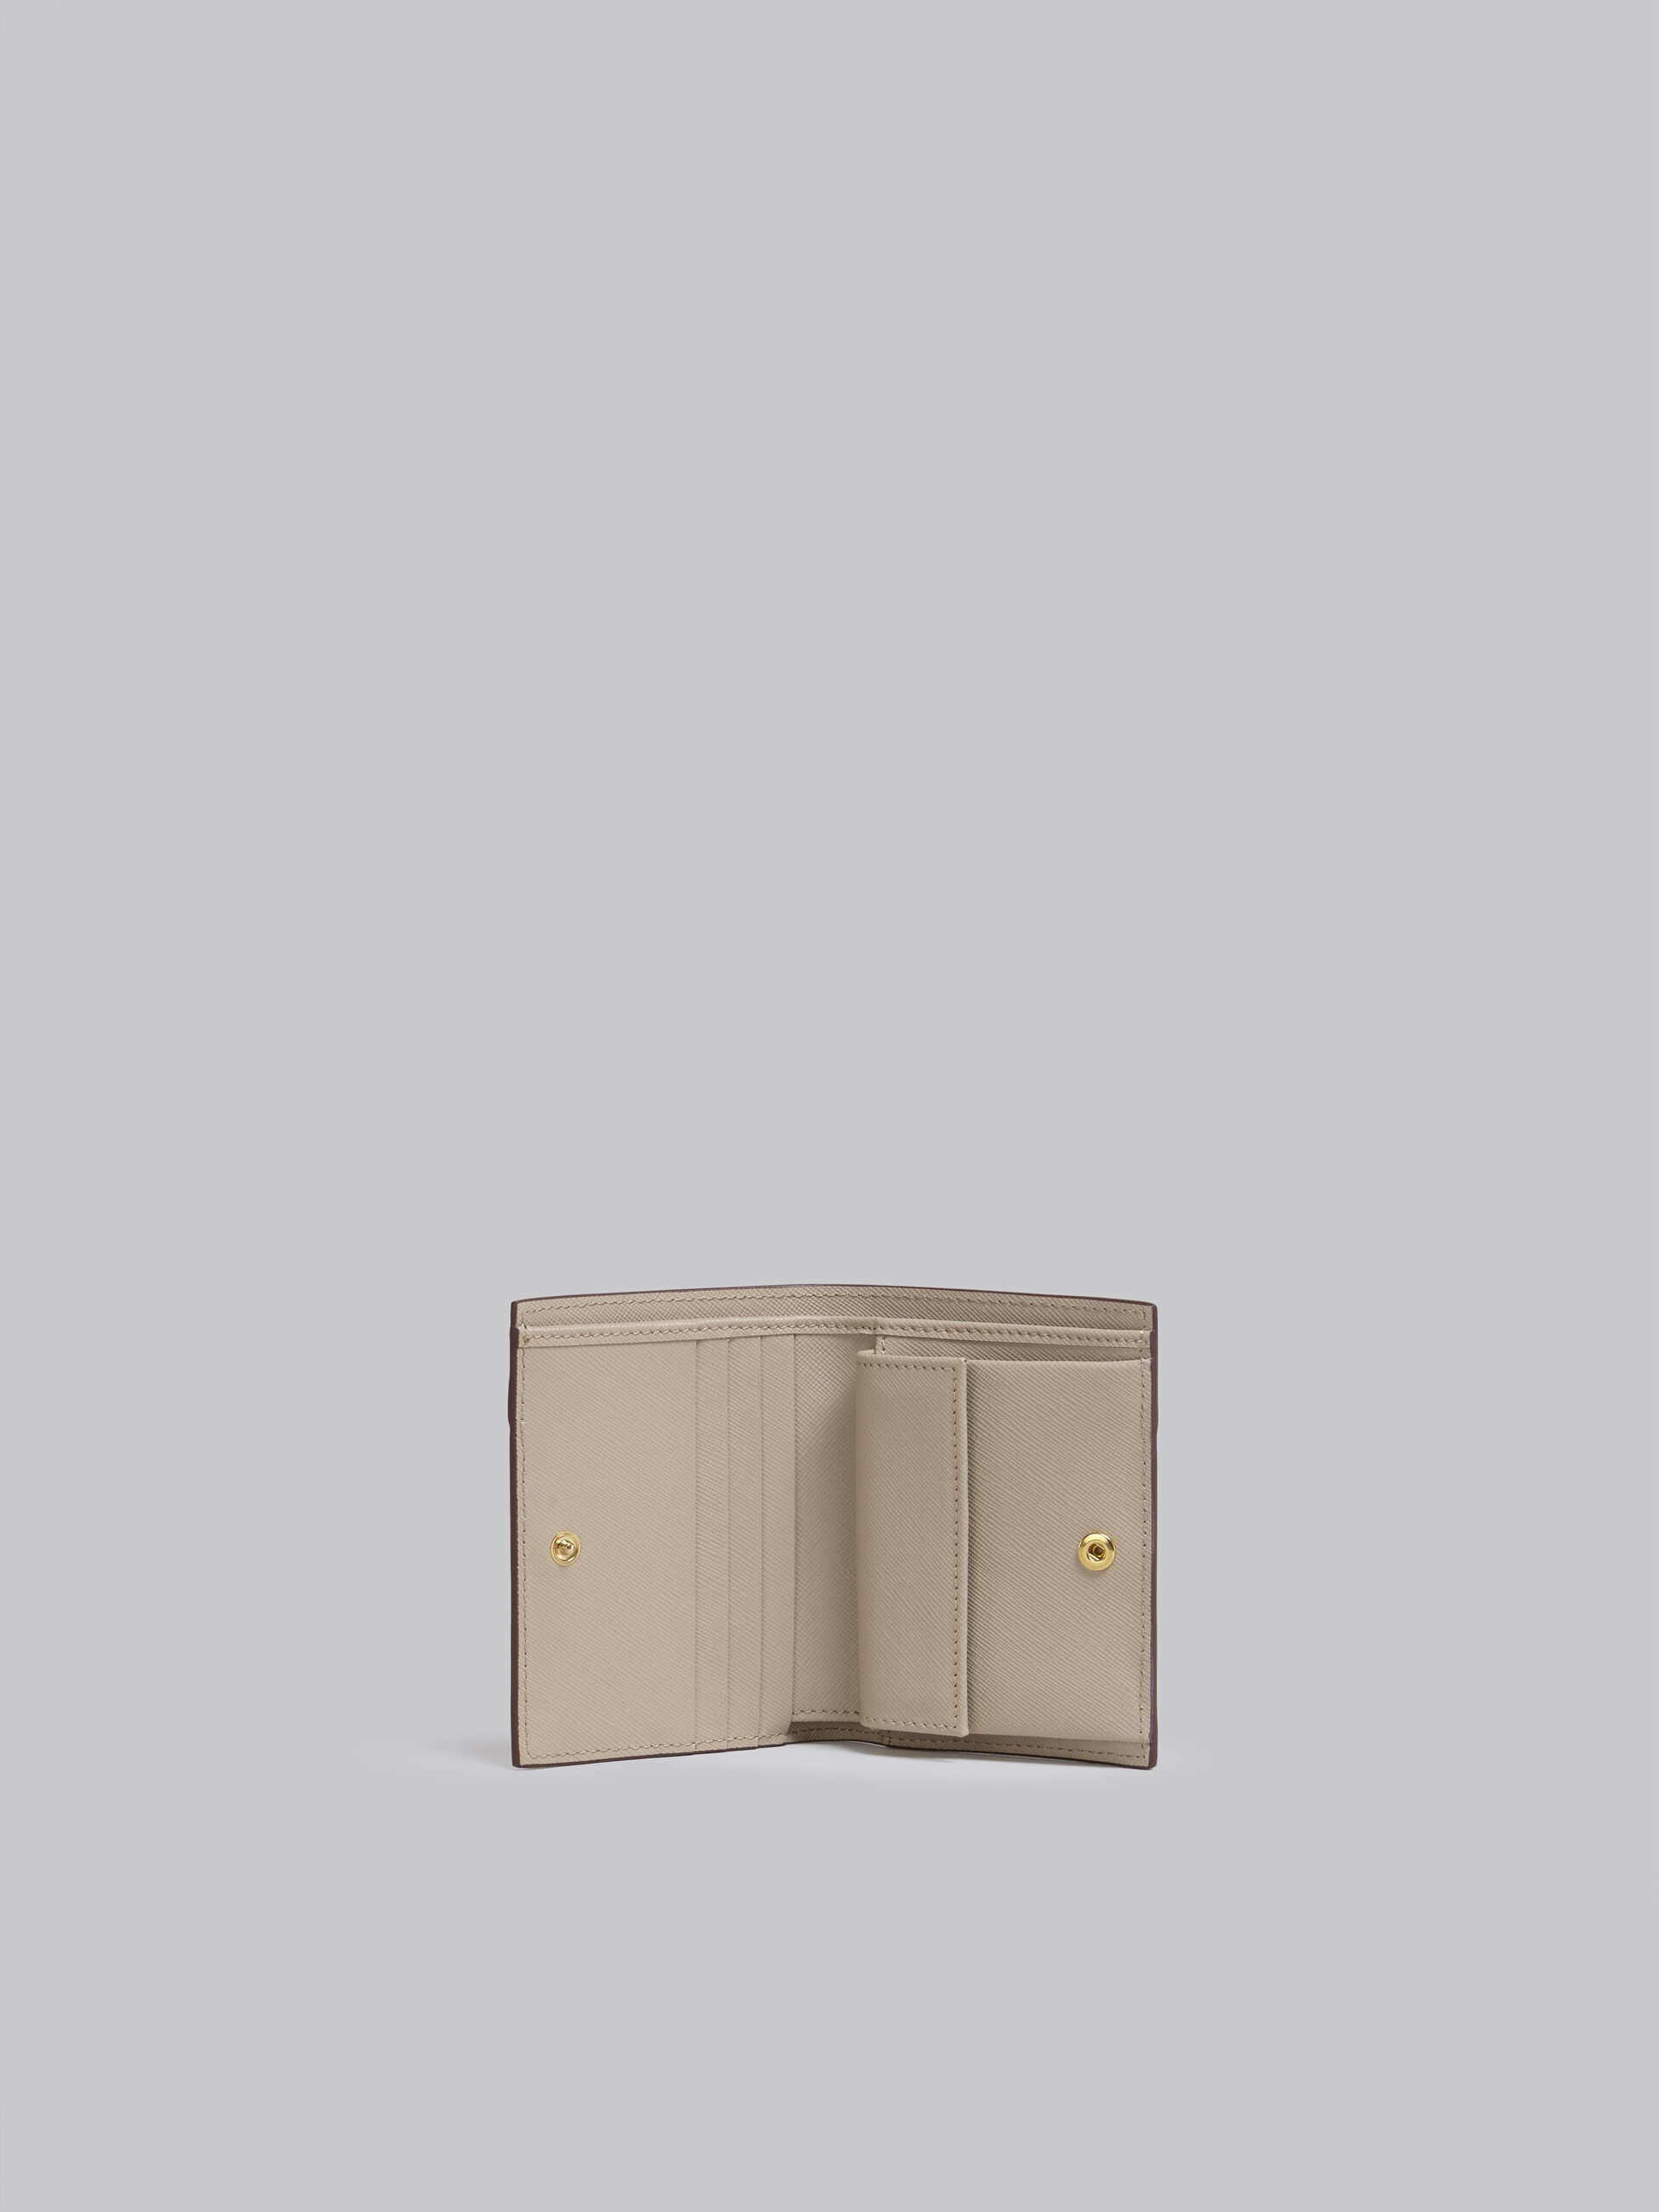 Portefeuille à deux rabats en cuir saffiano beige - Portefeuilles - Image 2